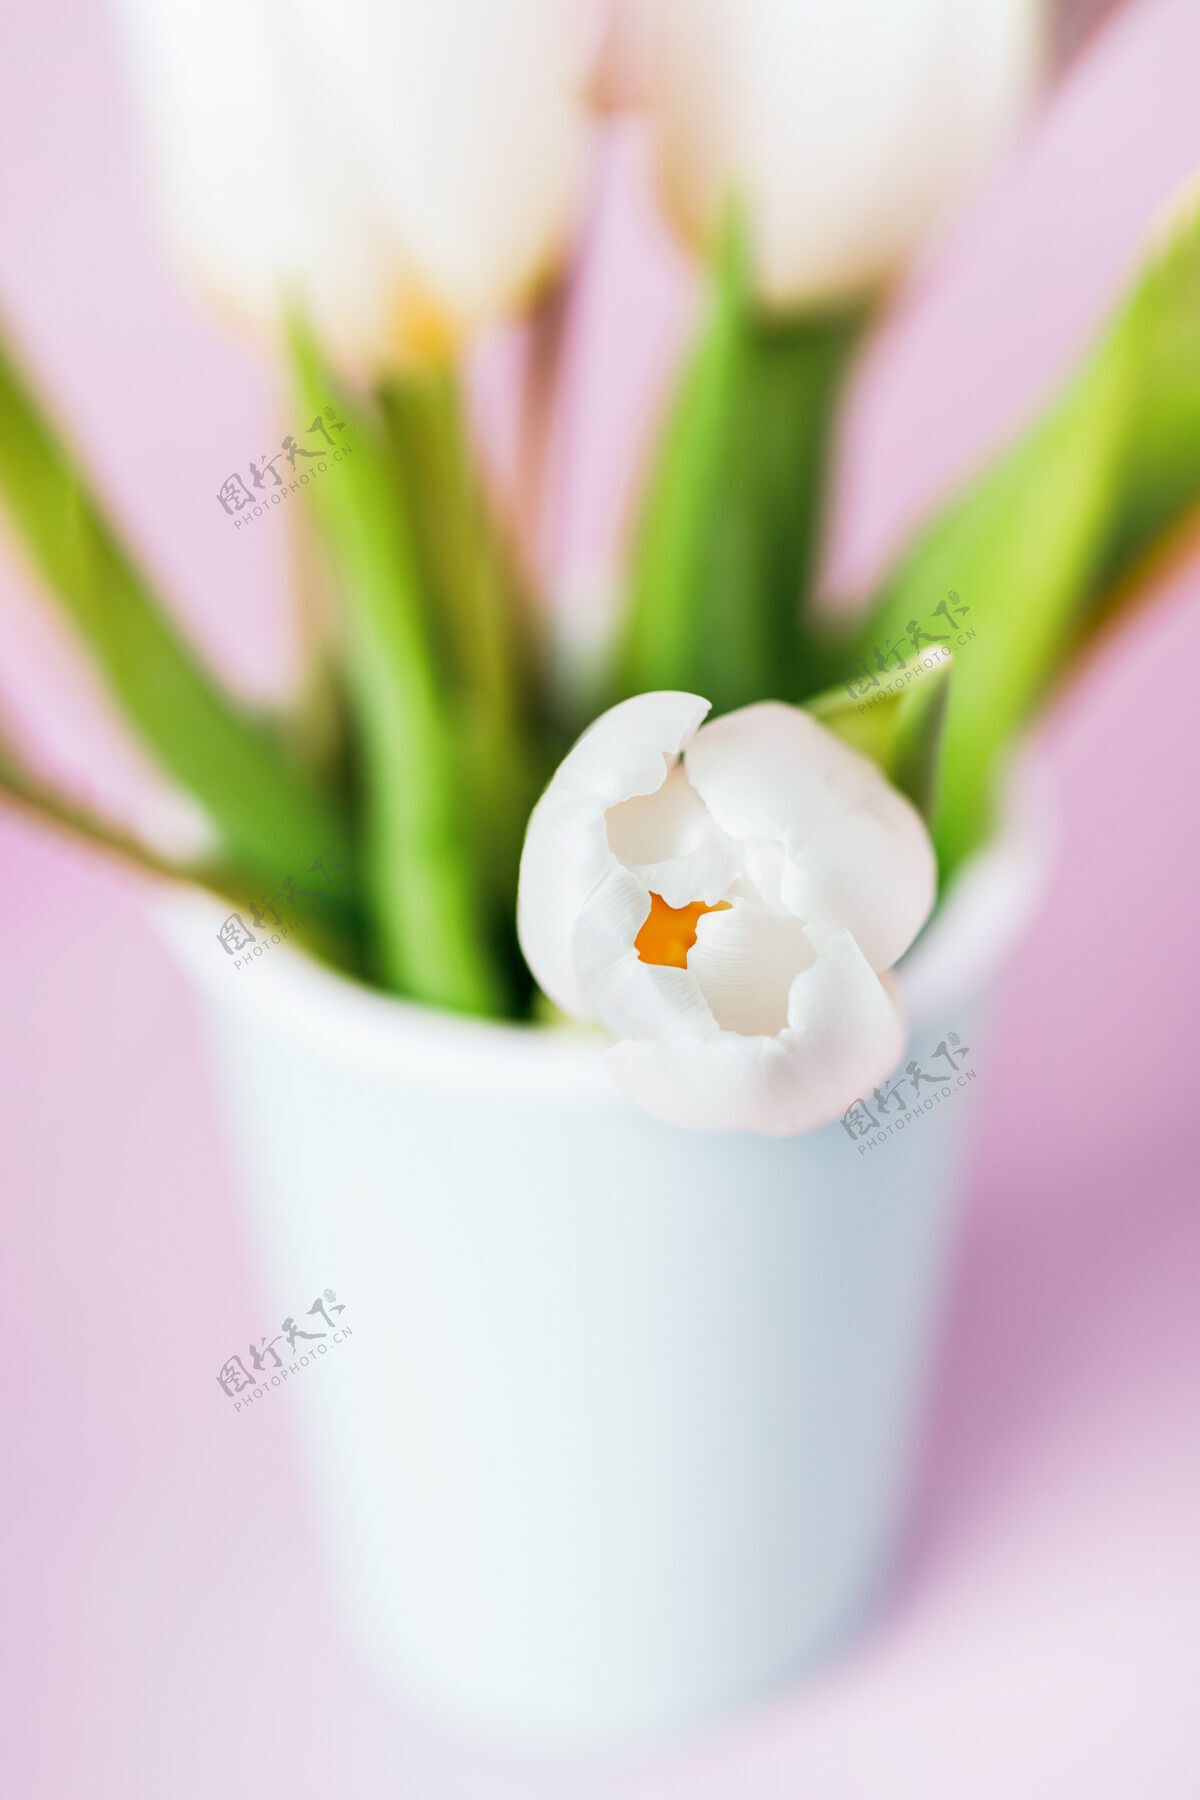 薄荷薄荷色或蒂芙尼色玻璃 白色郁金香 柔和粉色玻璃薄荷色鲜花